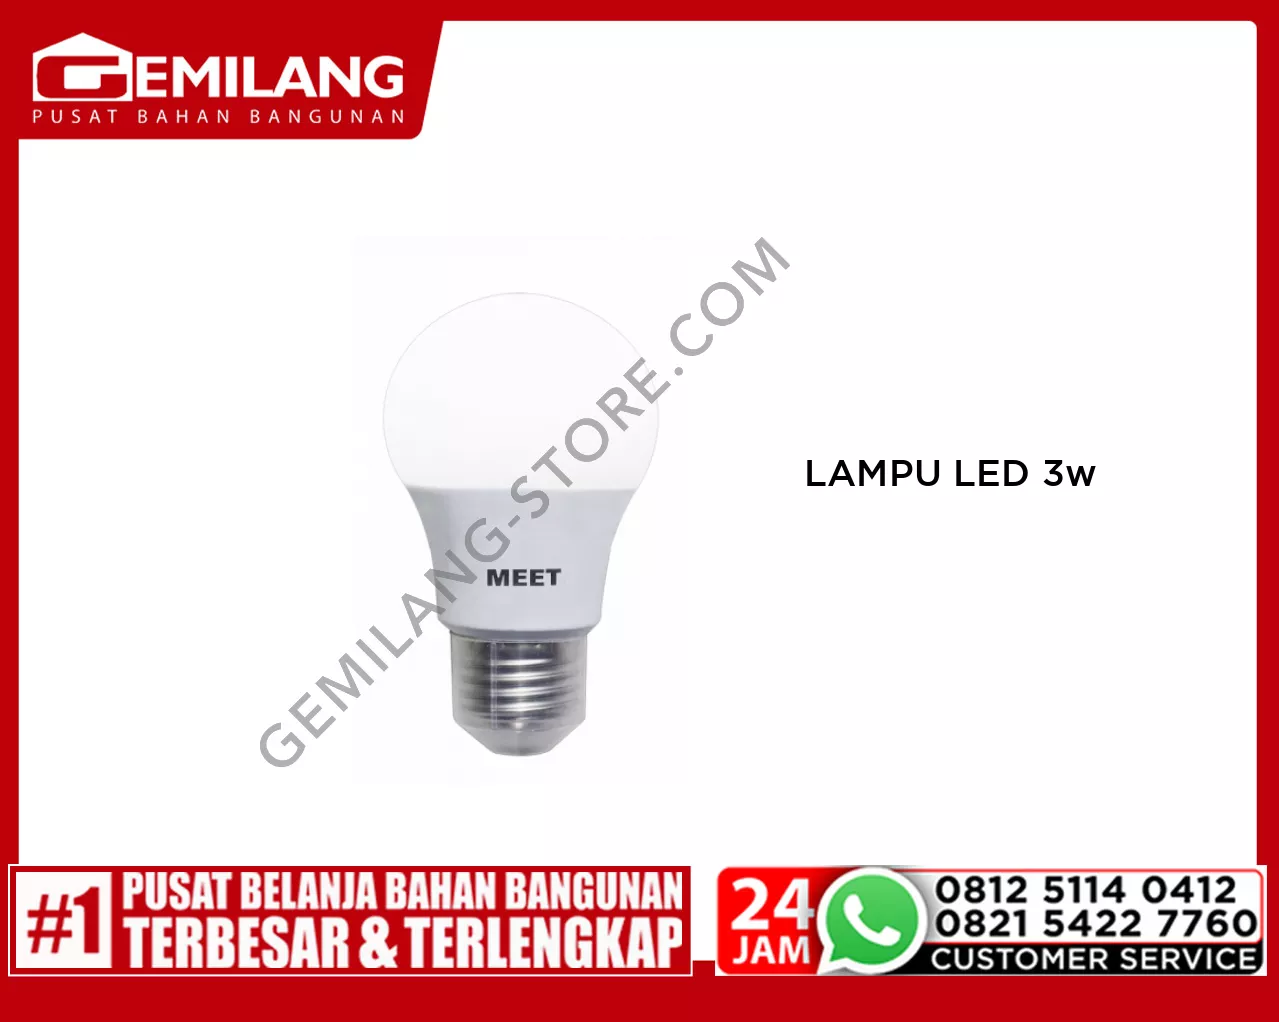 MEET LAMPU LED CLASSIC 3w